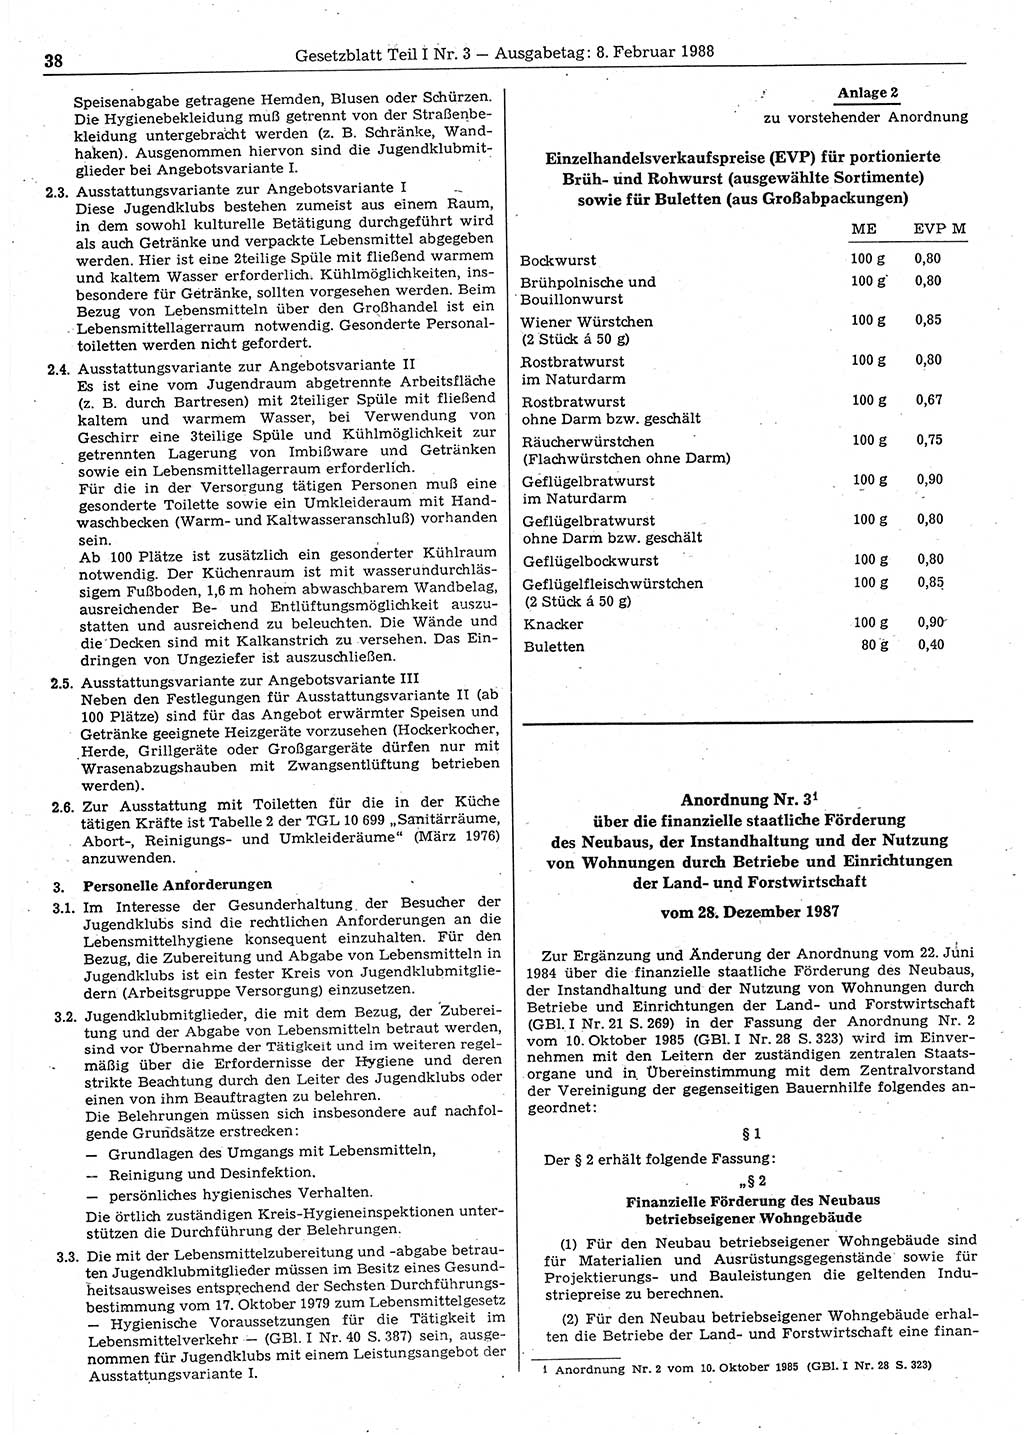 Gesetzblatt (GBl.) der Deutschen Demokratischen Republik (DDR) Teil Ⅰ 1988, Seite 38 (GBl. DDR Ⅰ 1988, S. 38)